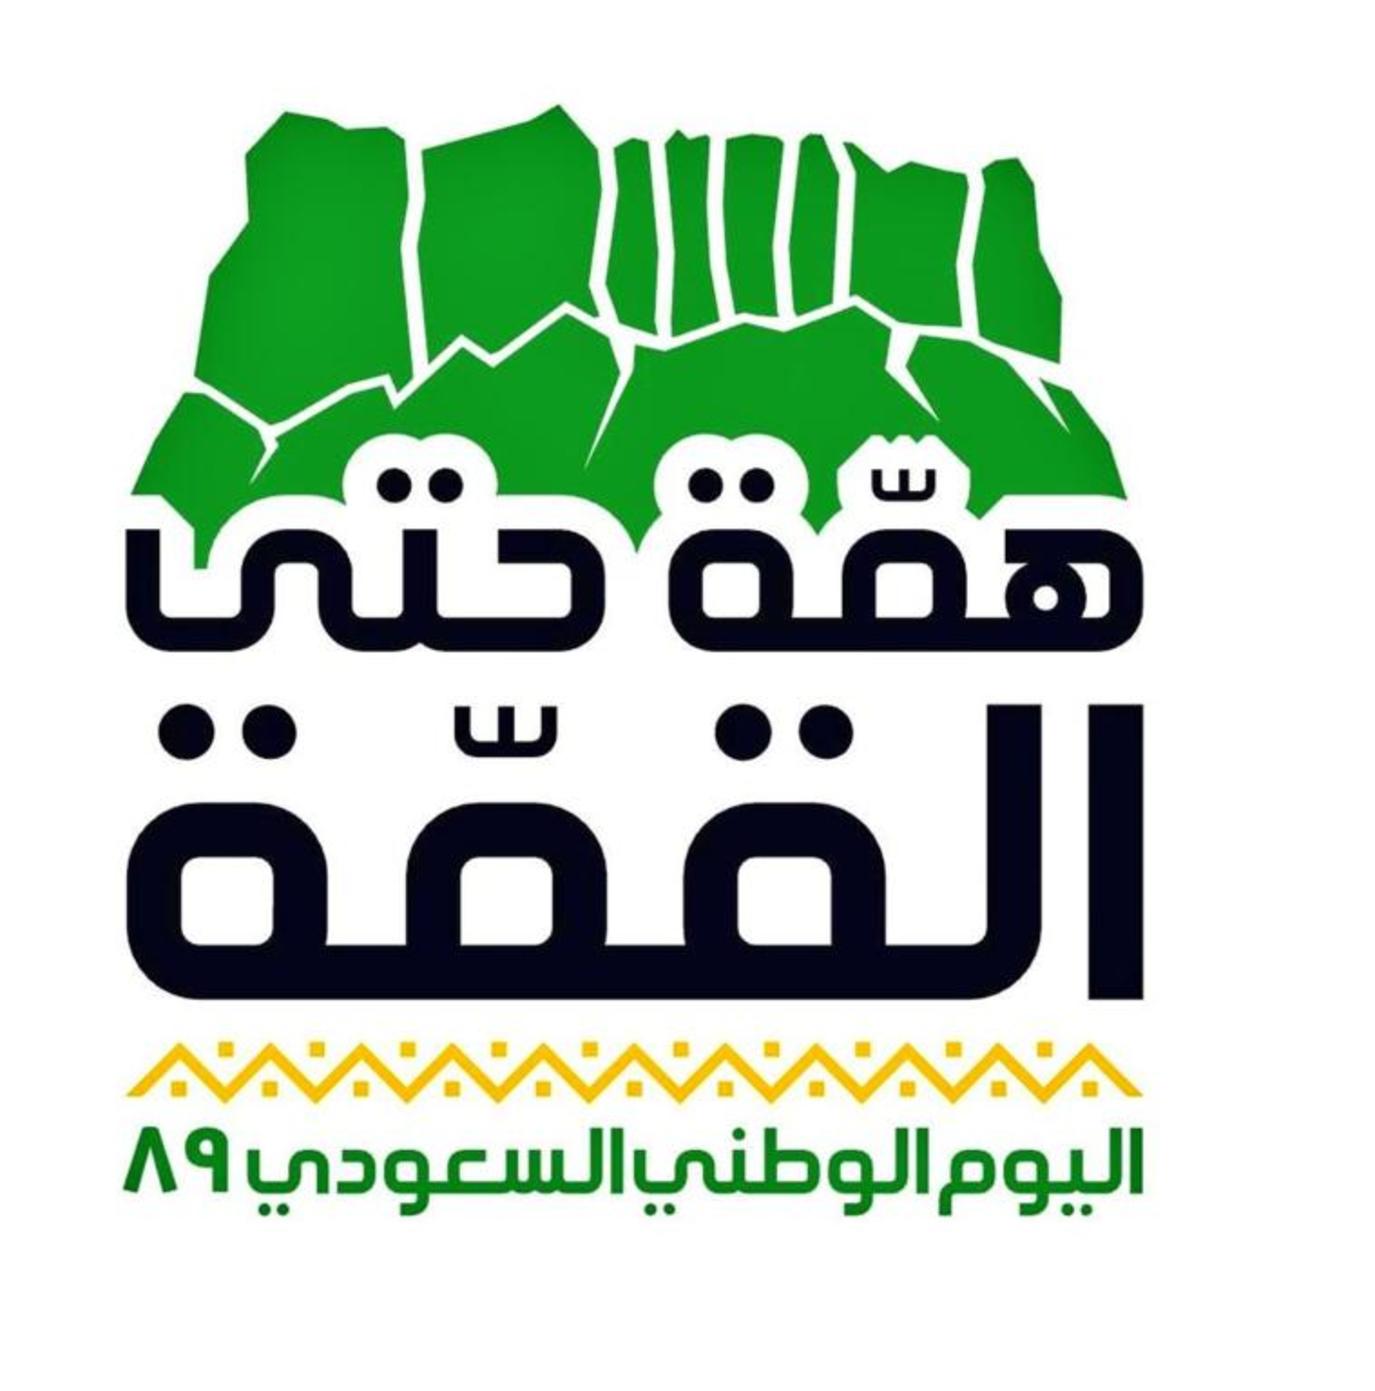 السعودي الشعار الوطني شعار اليوم